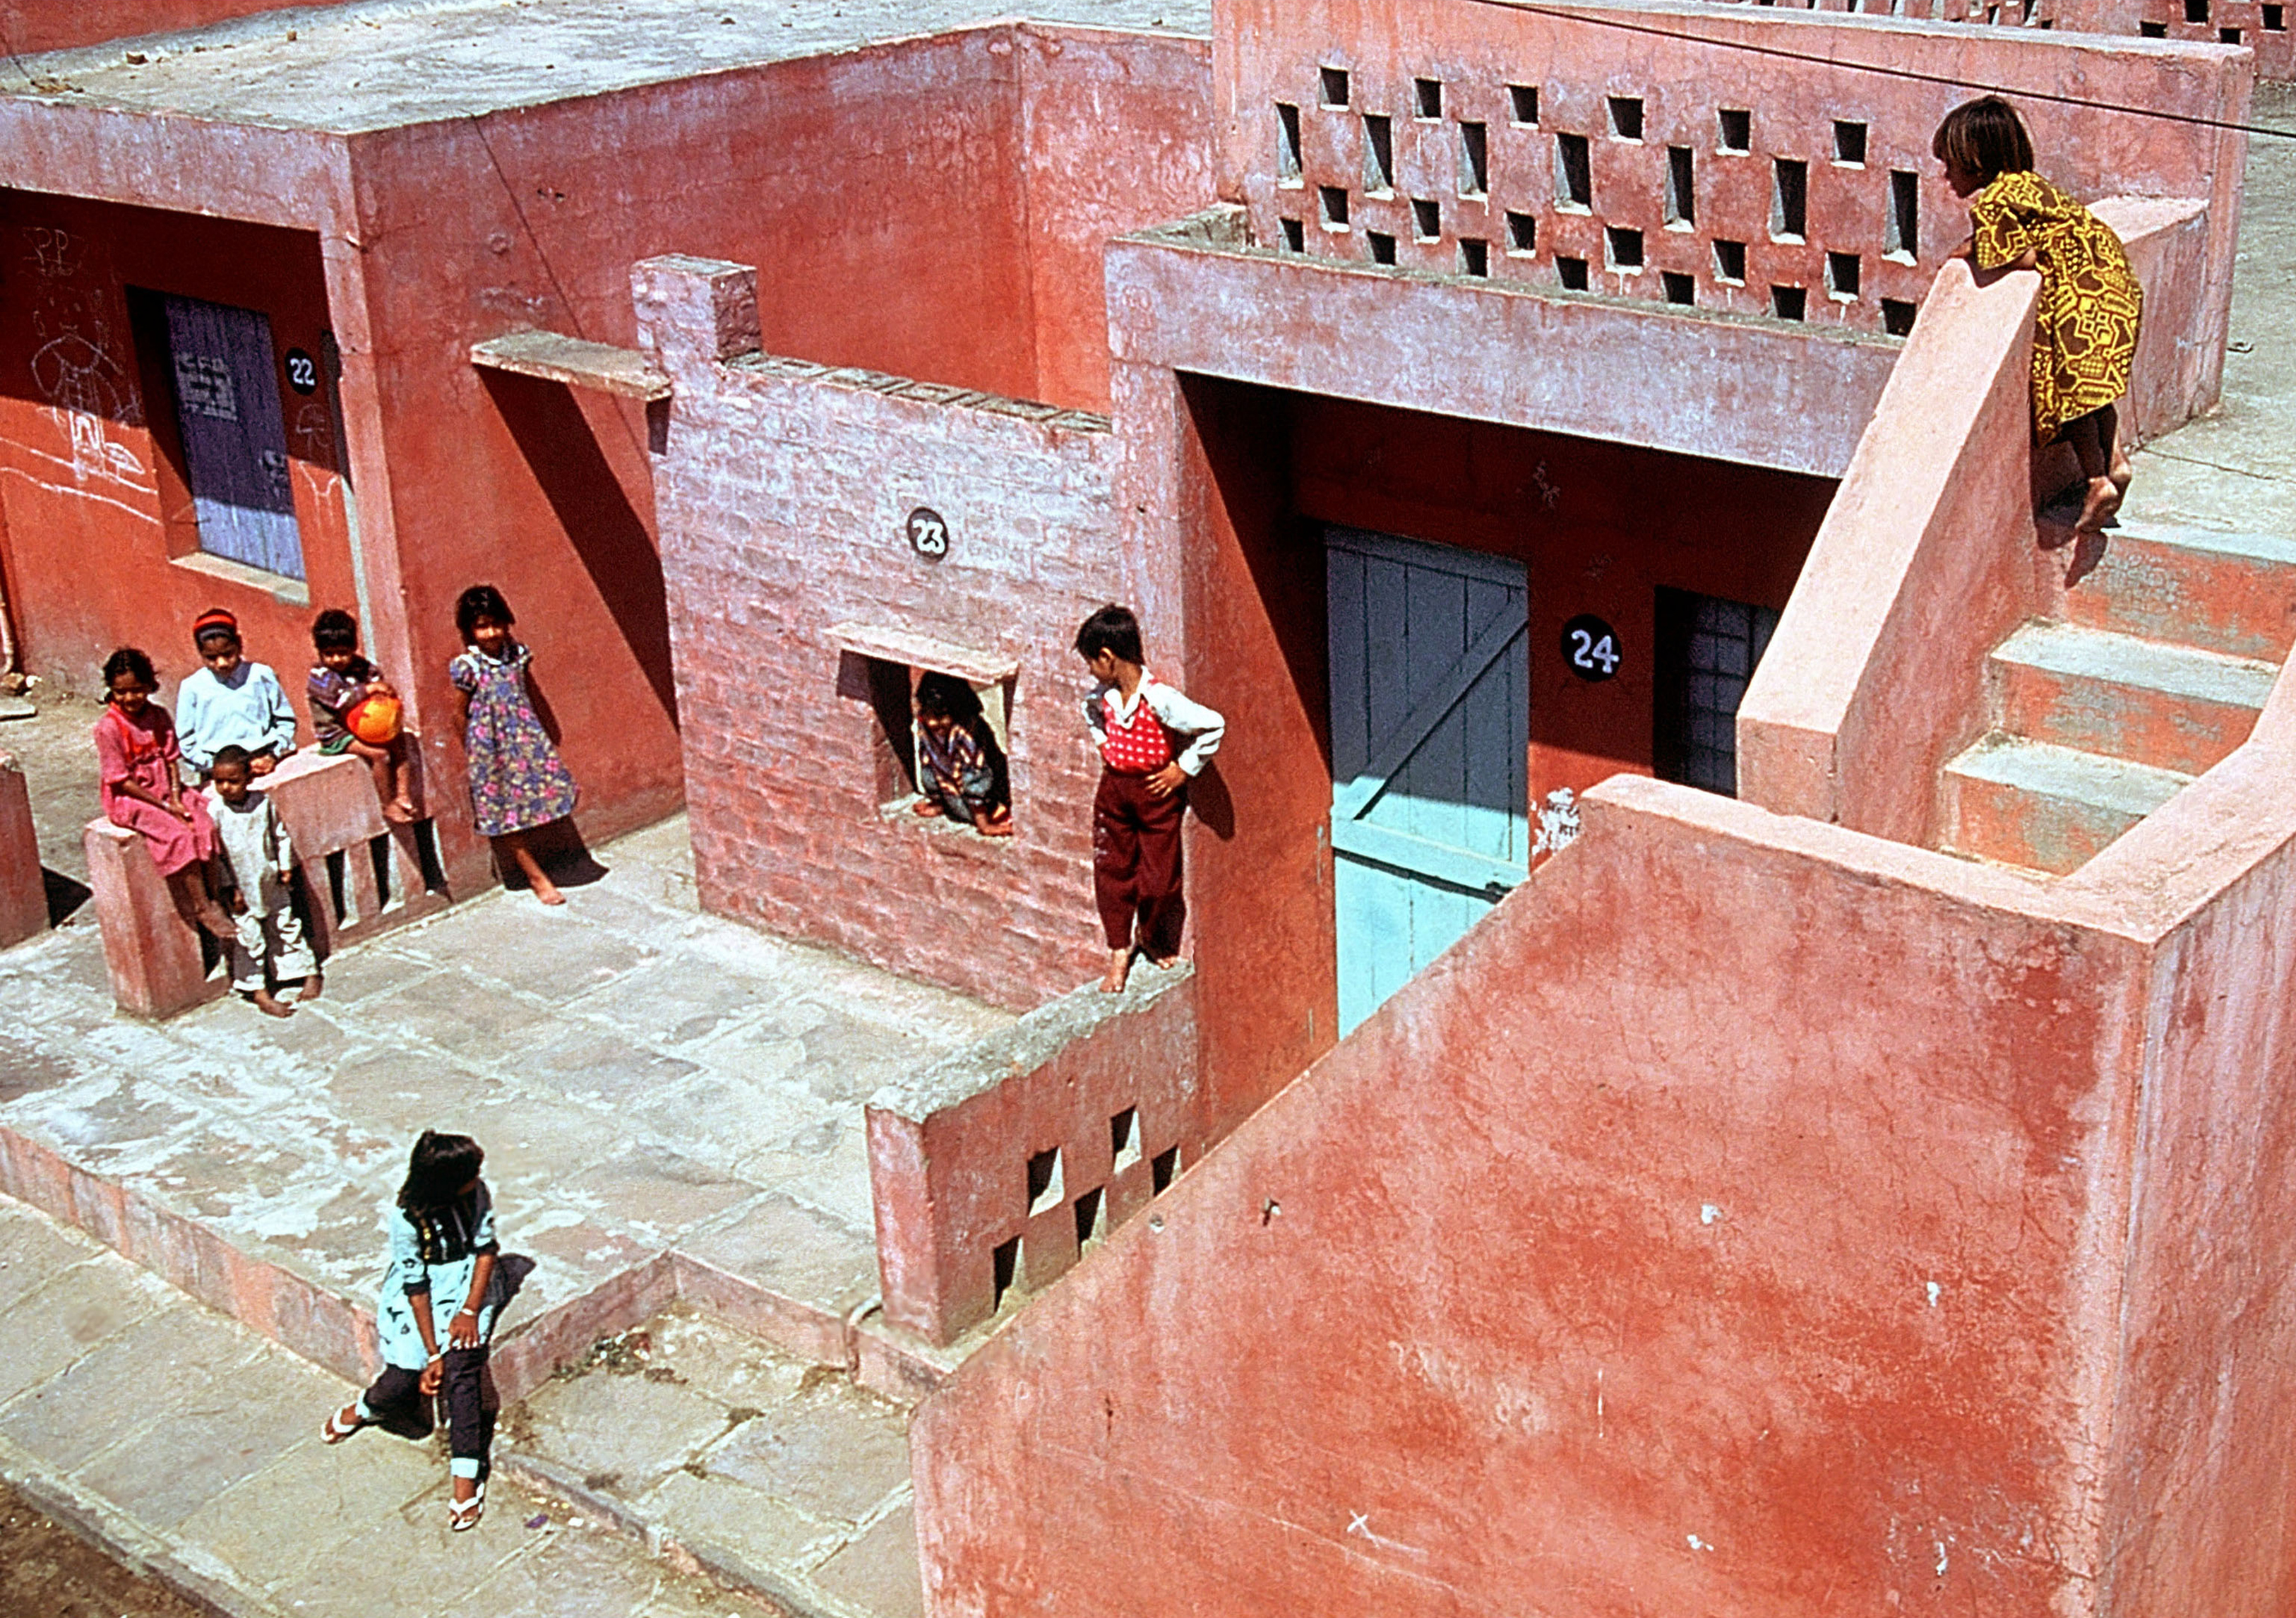 Imagen del complejo de viviendas populares Aranya, creado por Doshi en la ciudad de Indore: un sistema de casas, patios y un laberinto de senderos internos donde viven 80.000 personas